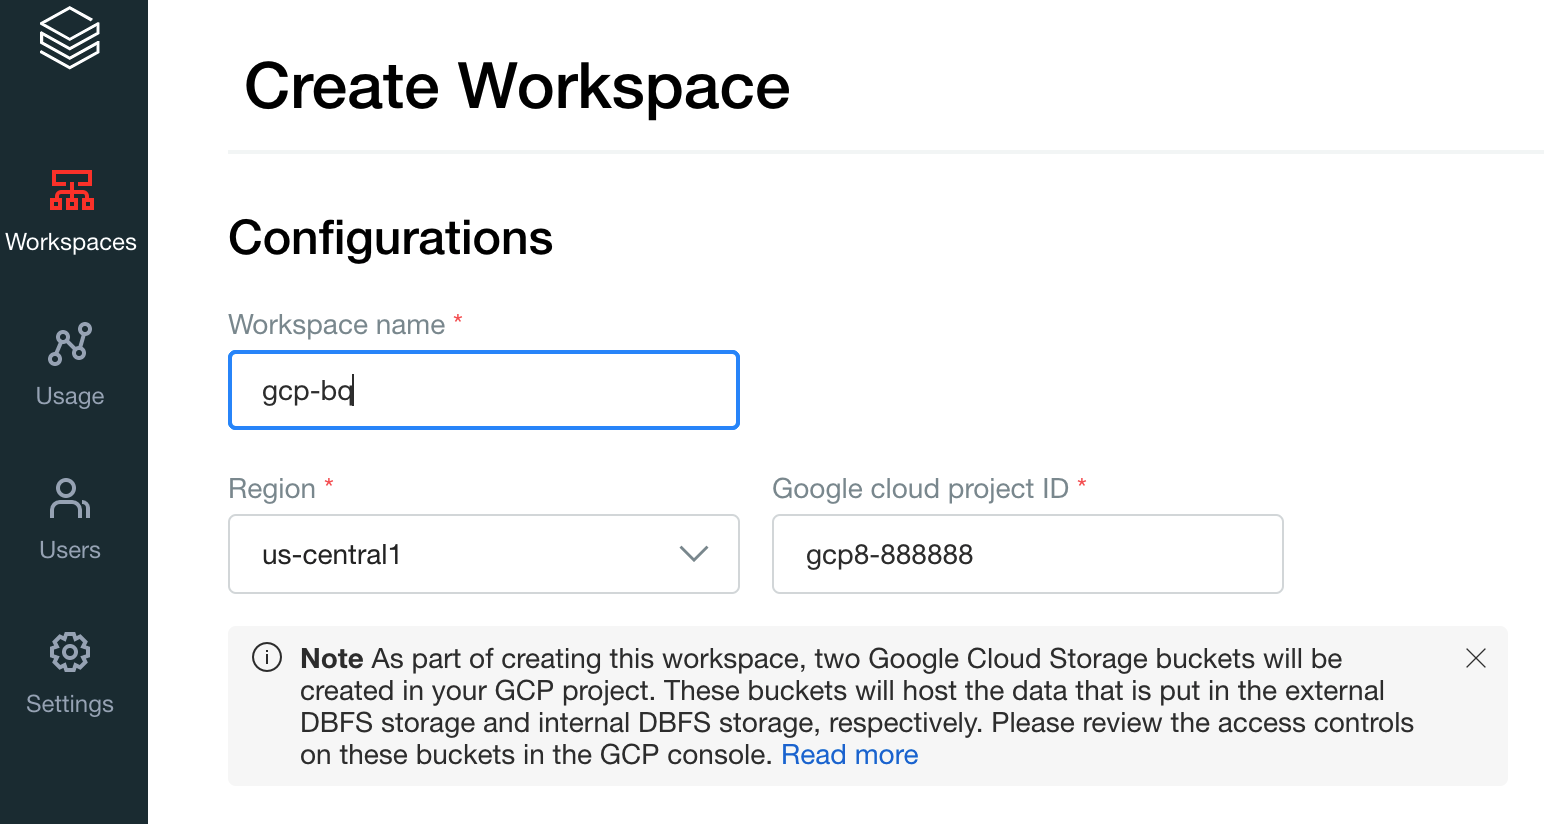 작업공간 이름, 리전, Google Cloud 프로젝트 ID가 있는 작업공간 만들기 화면